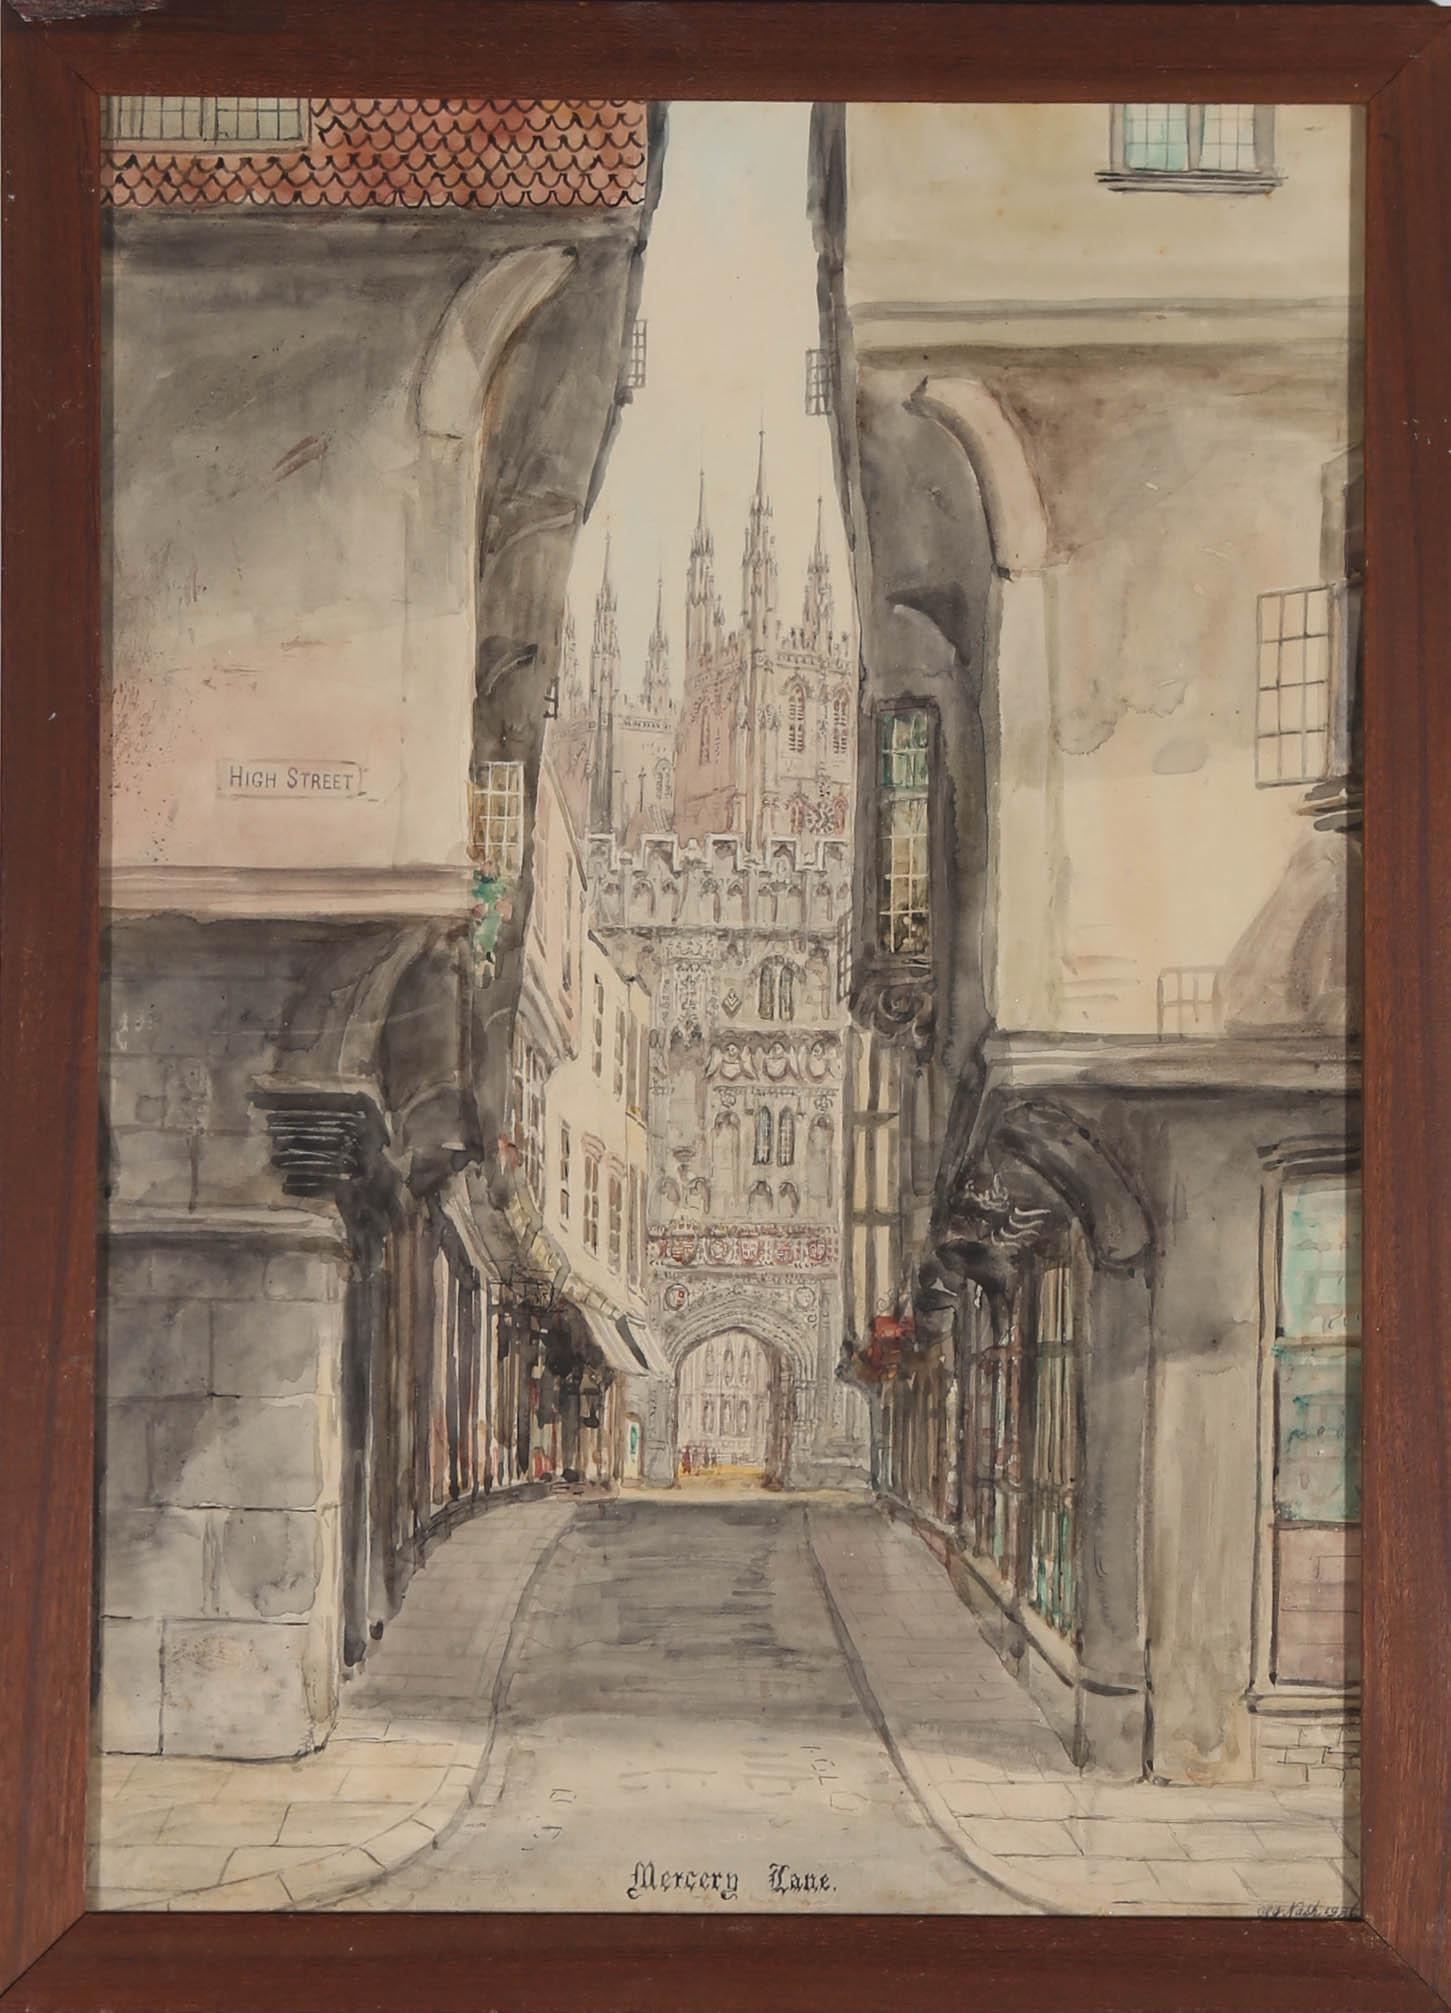 Ein Originalaquarell des Künstlers S. J. "Toby" Nash (1891-1960) aus dem Jahr 1936, das die Mercery Lane in Canterbury, Kent, darstellt. Diese komplizierte architektonische Komposition zeigt die weltberühmte Kathedrale der Stadt, eine UNESCO-Stätte,